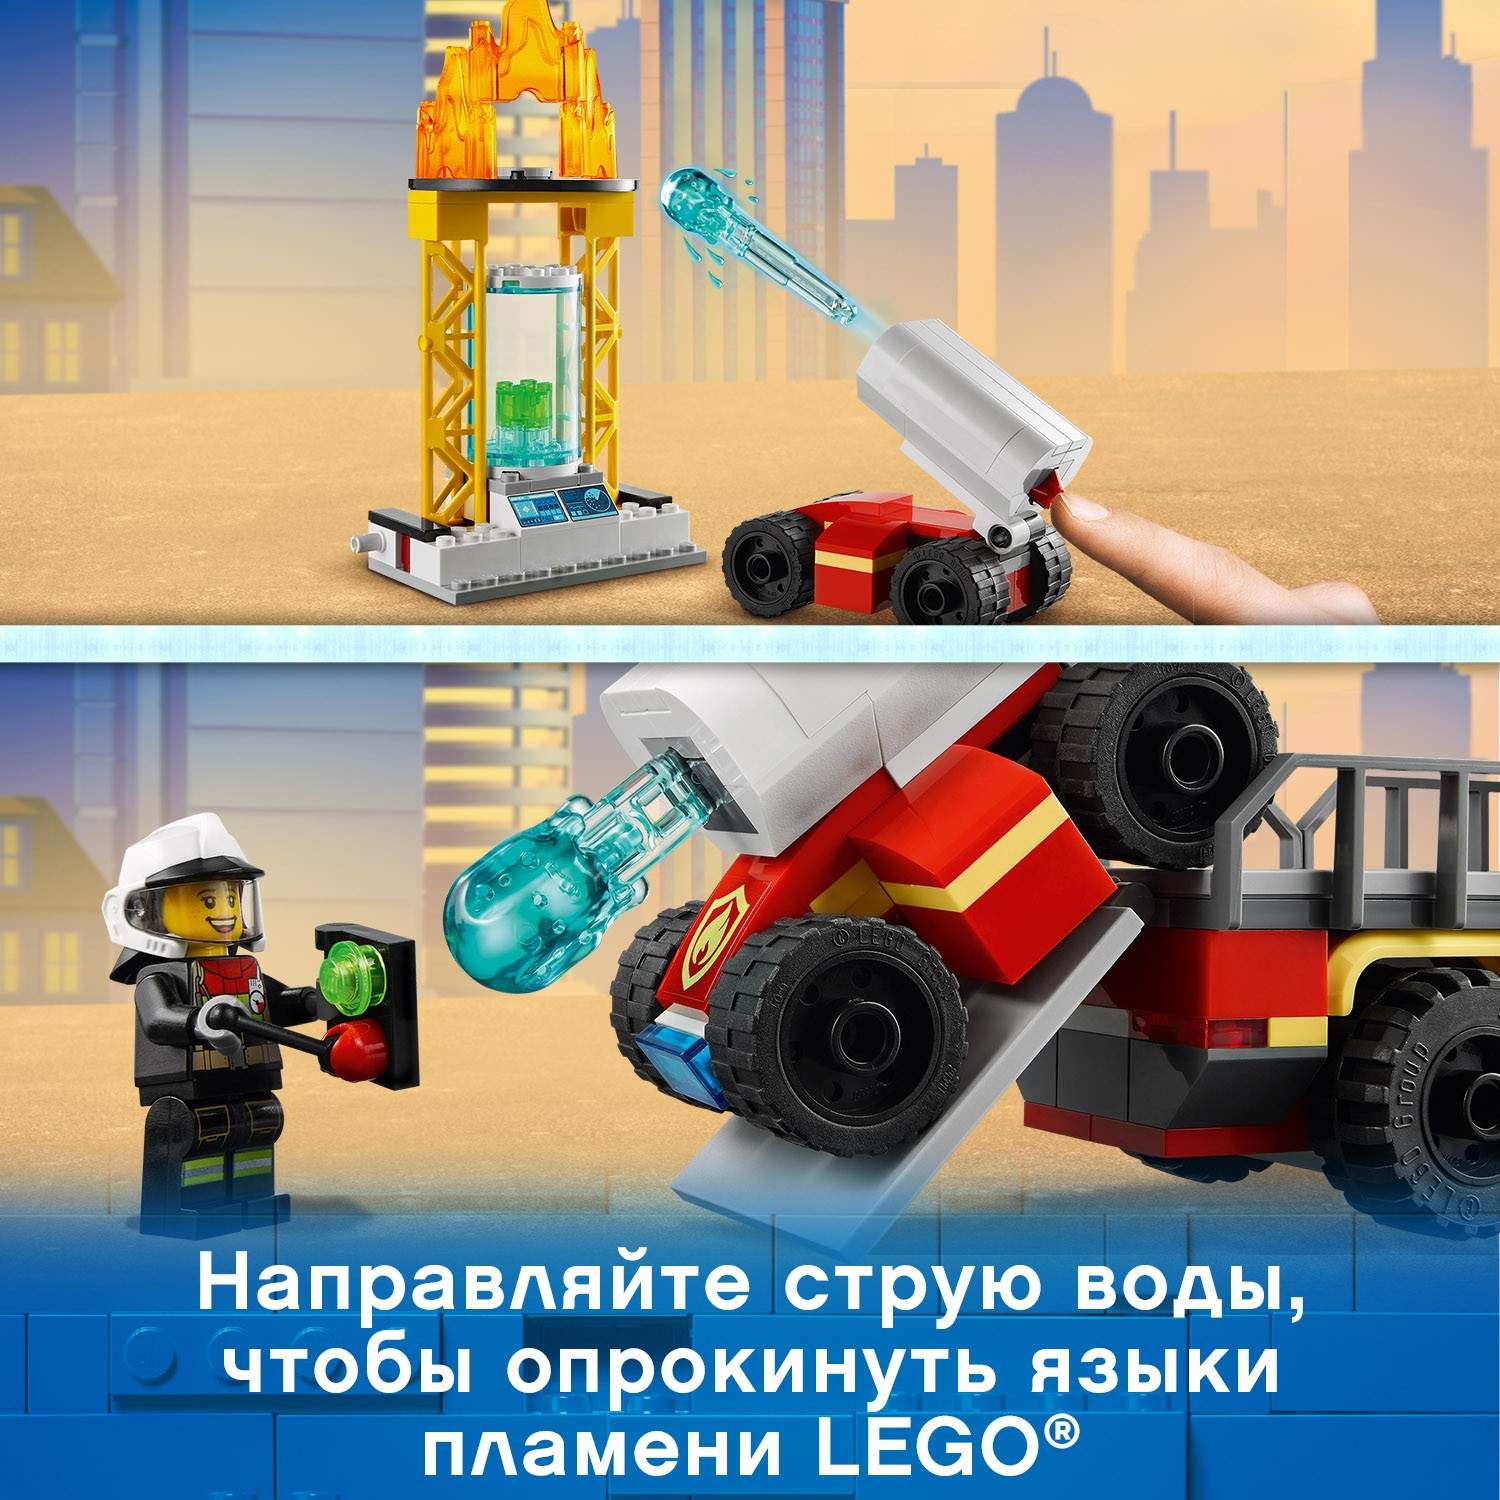 Конструктор LEGO City Fire 60282 Команда пожарных